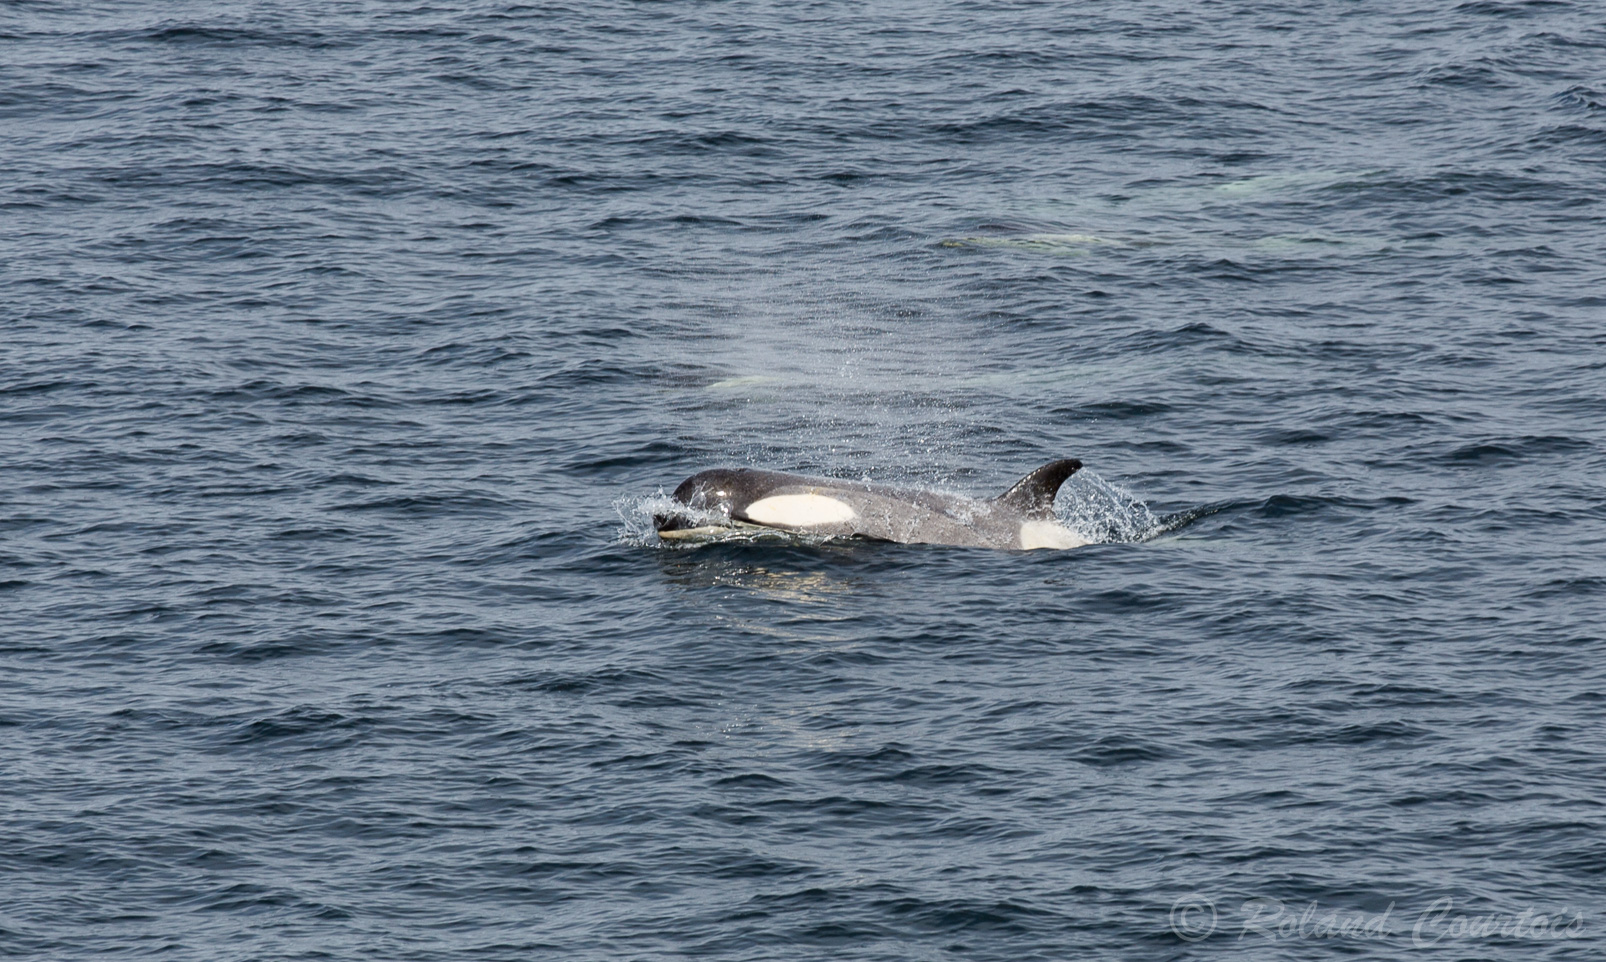 Les orques ont une apparence caractéristique avec un dos noir, un ventre blanc et une tache blanche derrière et au-dessus de l’œil.